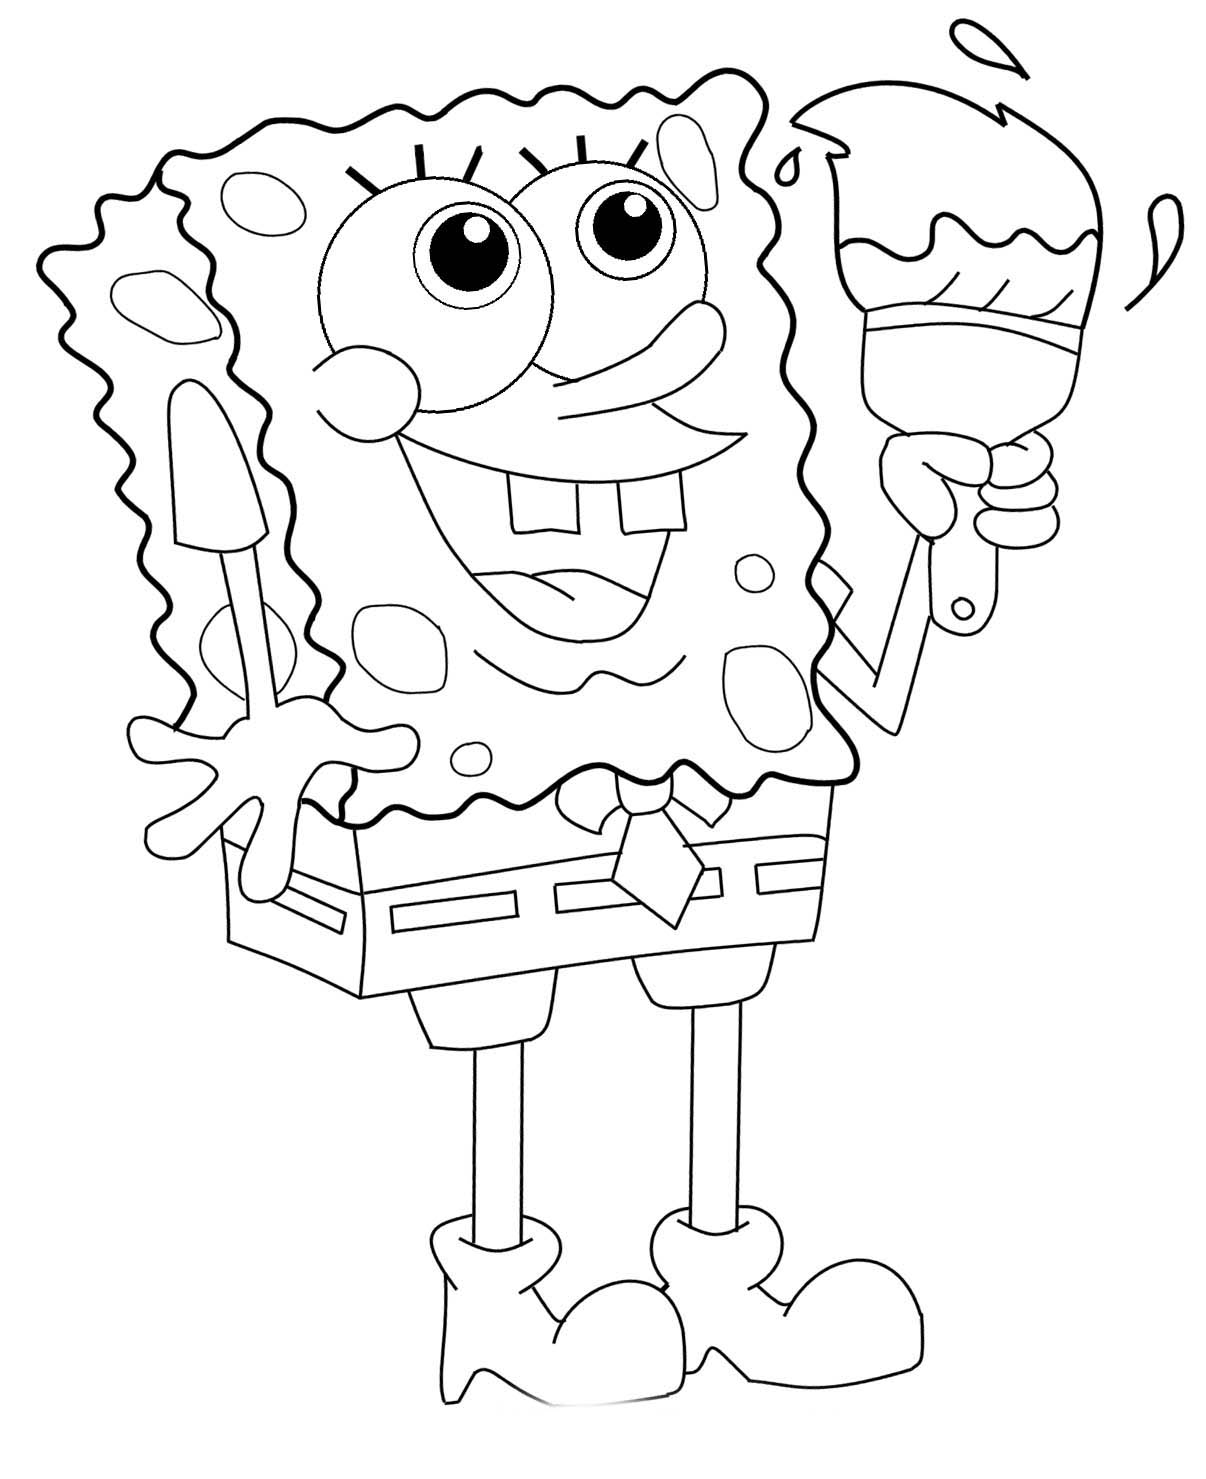 Dibujo Para Colorear De Bob Esponja In 2019 Spongebob Coloring Easy Images